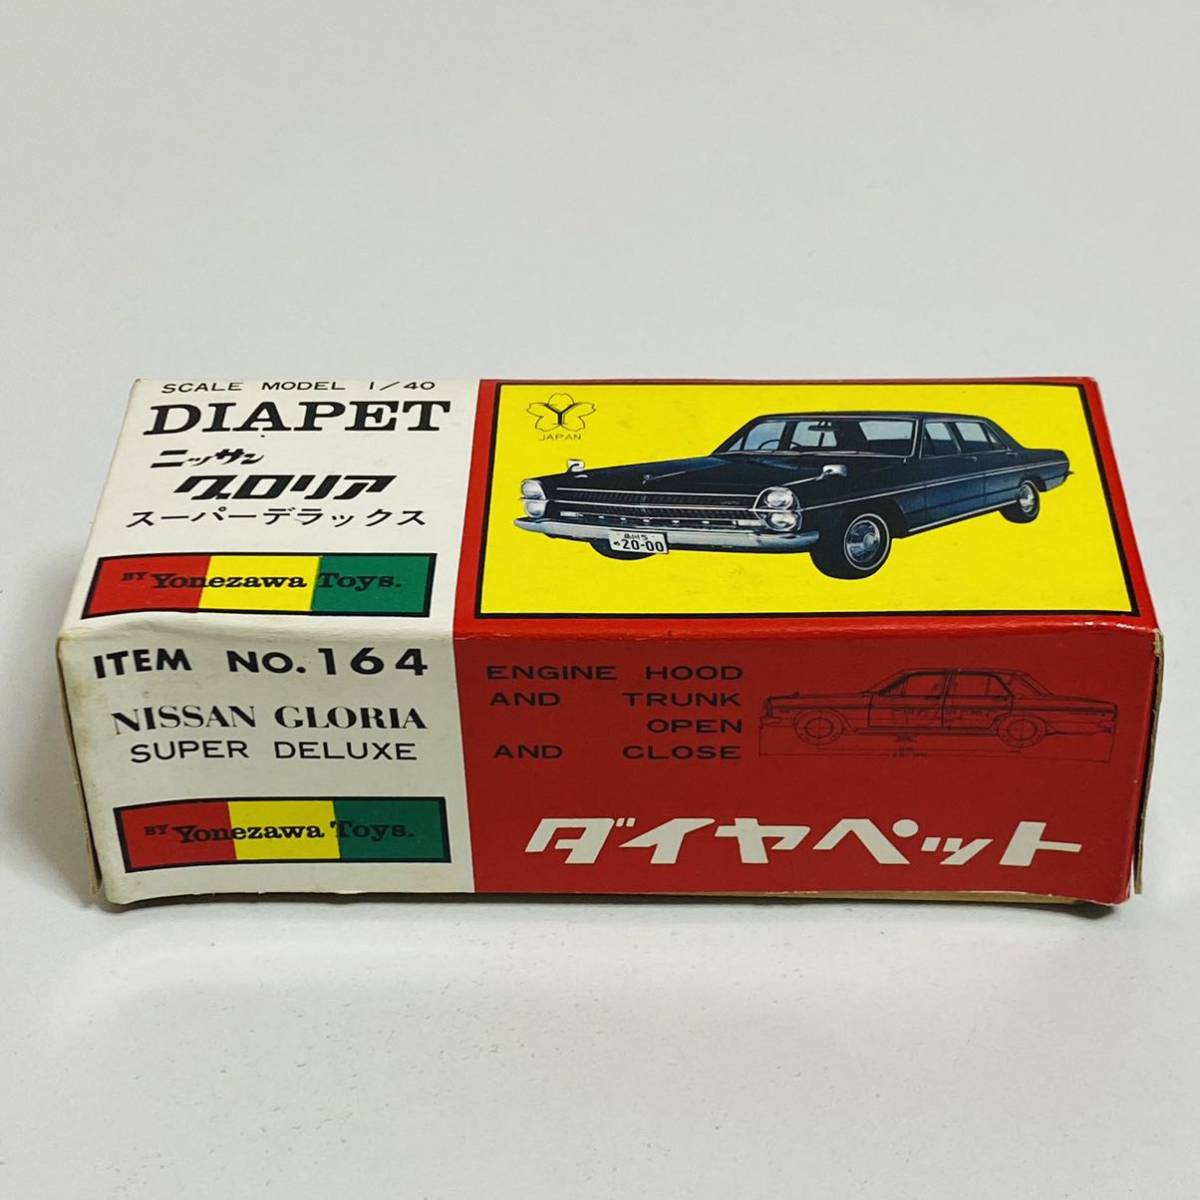 【中古品】Yonezawa Toys ヨネザワトイズ 1/40 DIAPET ダイヤペット No.164 NISSAN GLORIA ニッサン グロリア スーパーデラックス